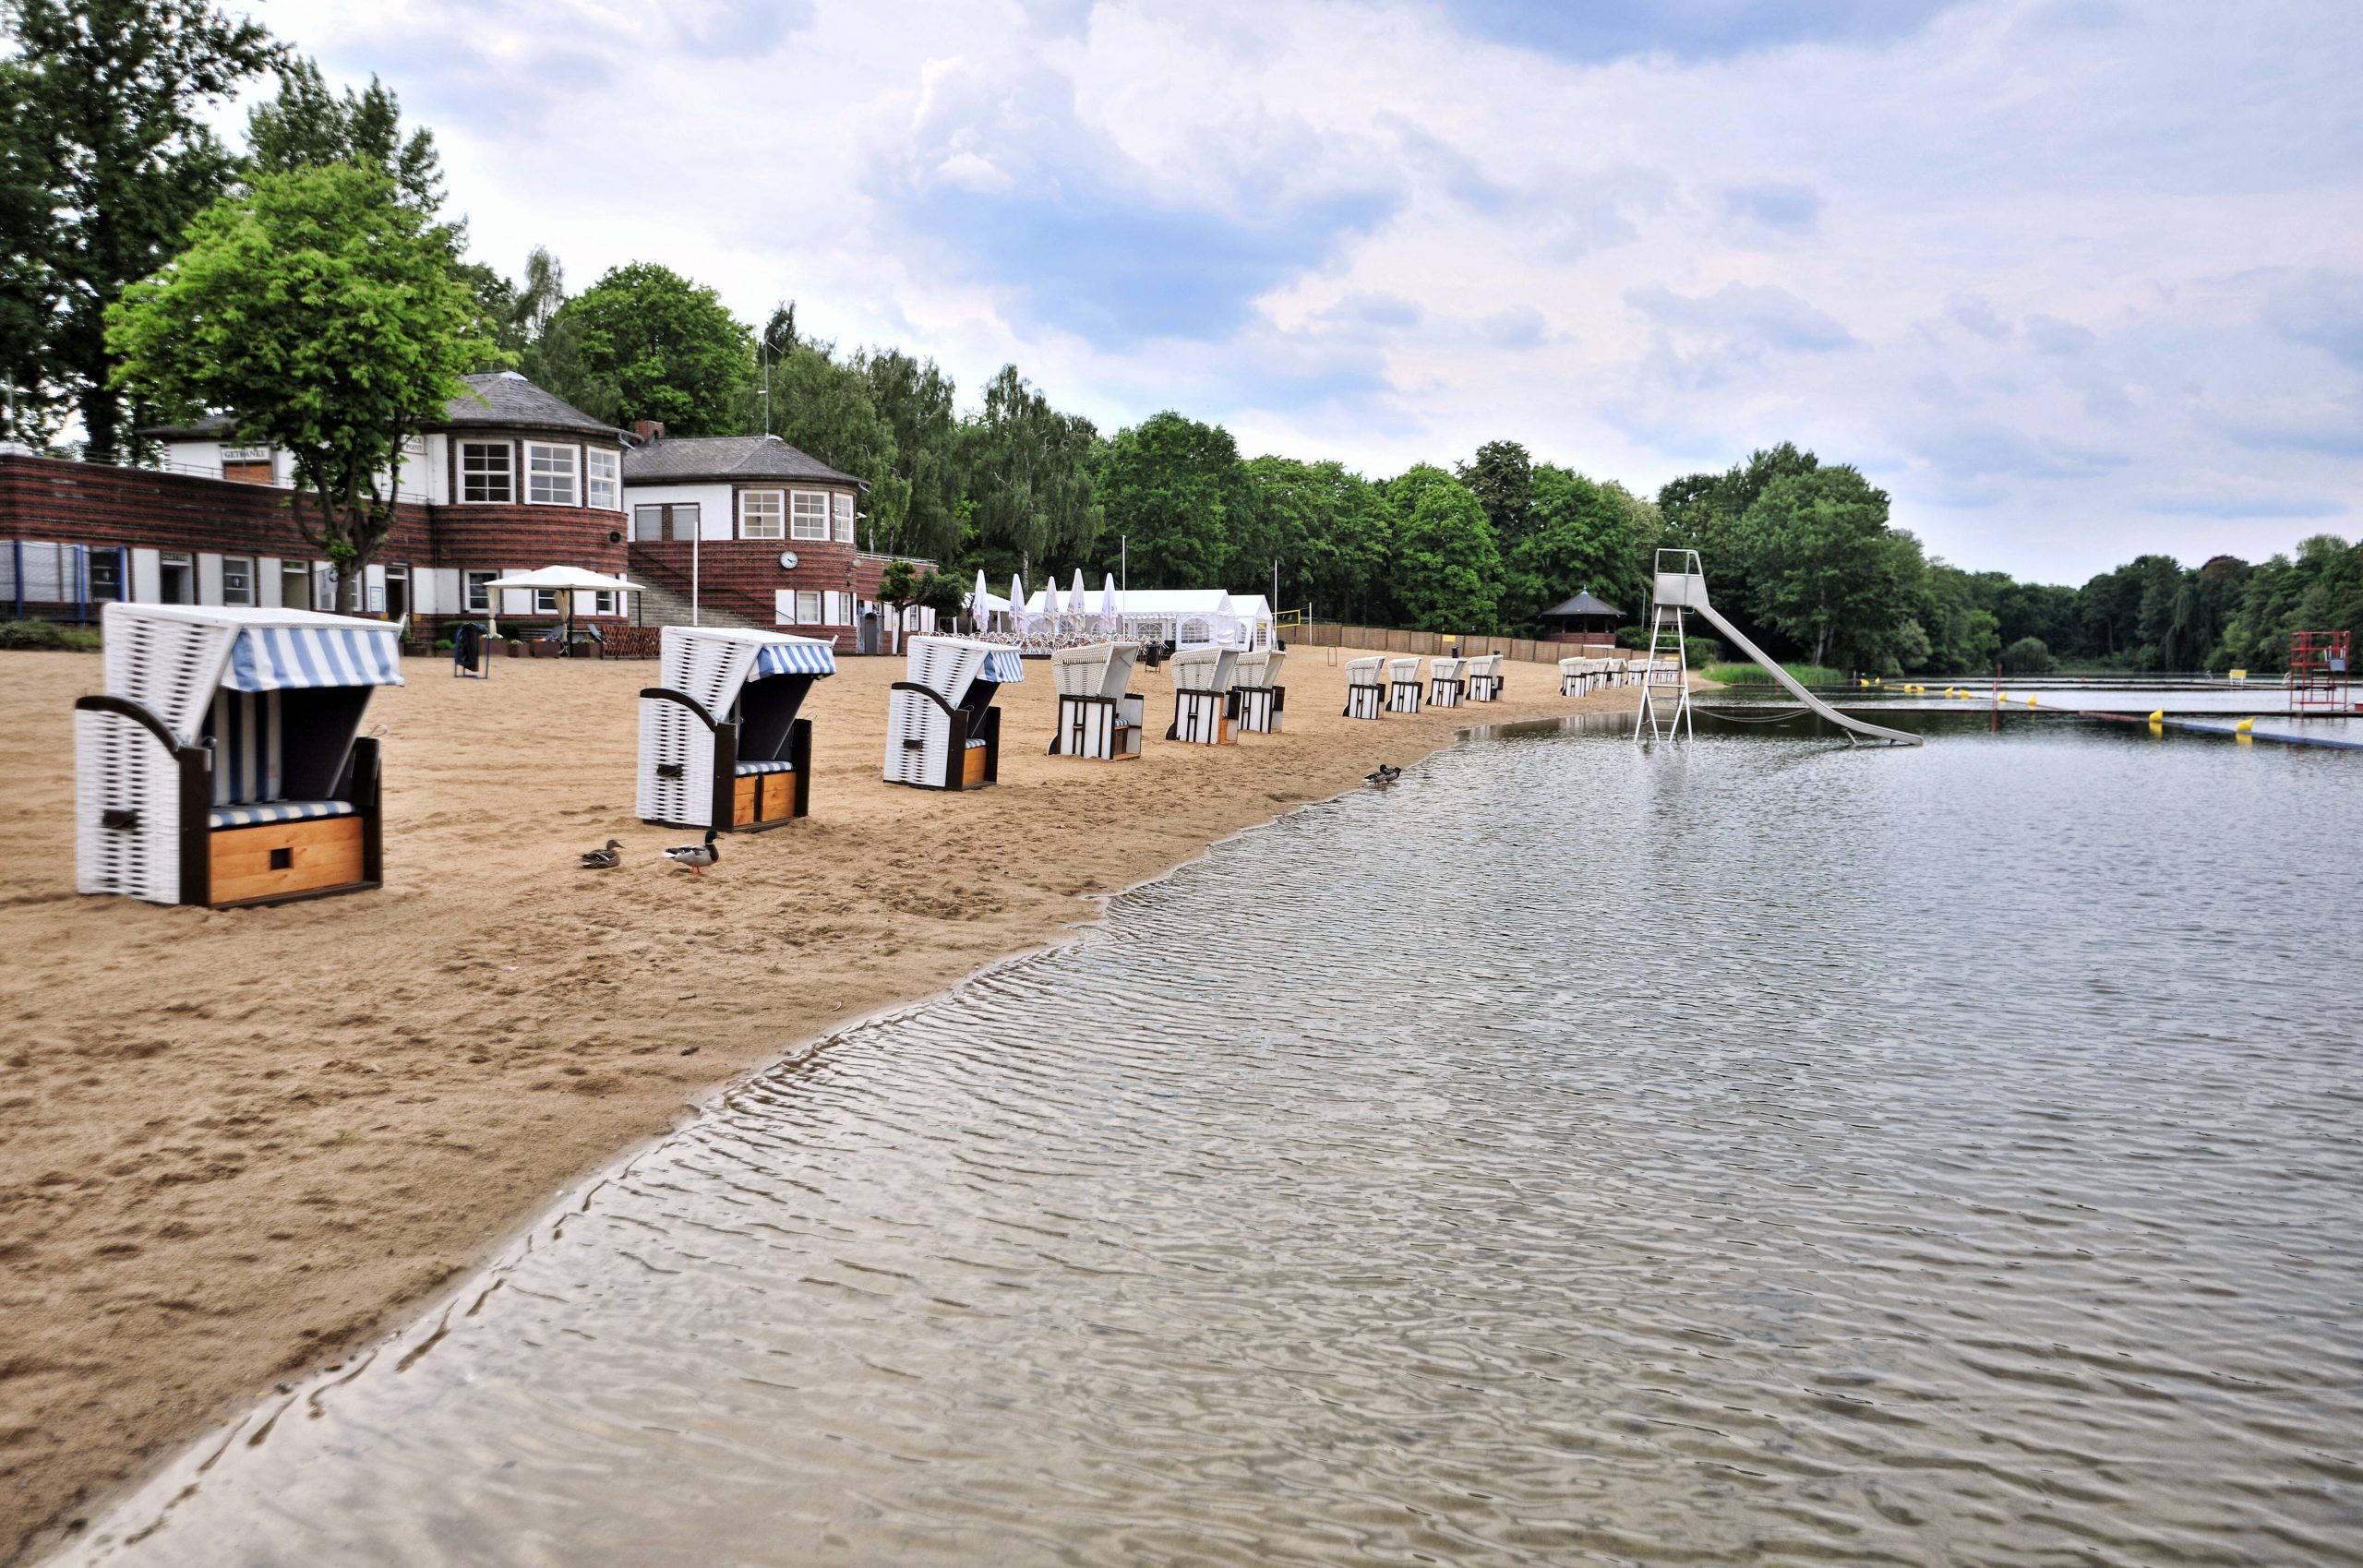 Strandfeeling und hübsche Architektur gibt es im Strandbad Plötzensee.